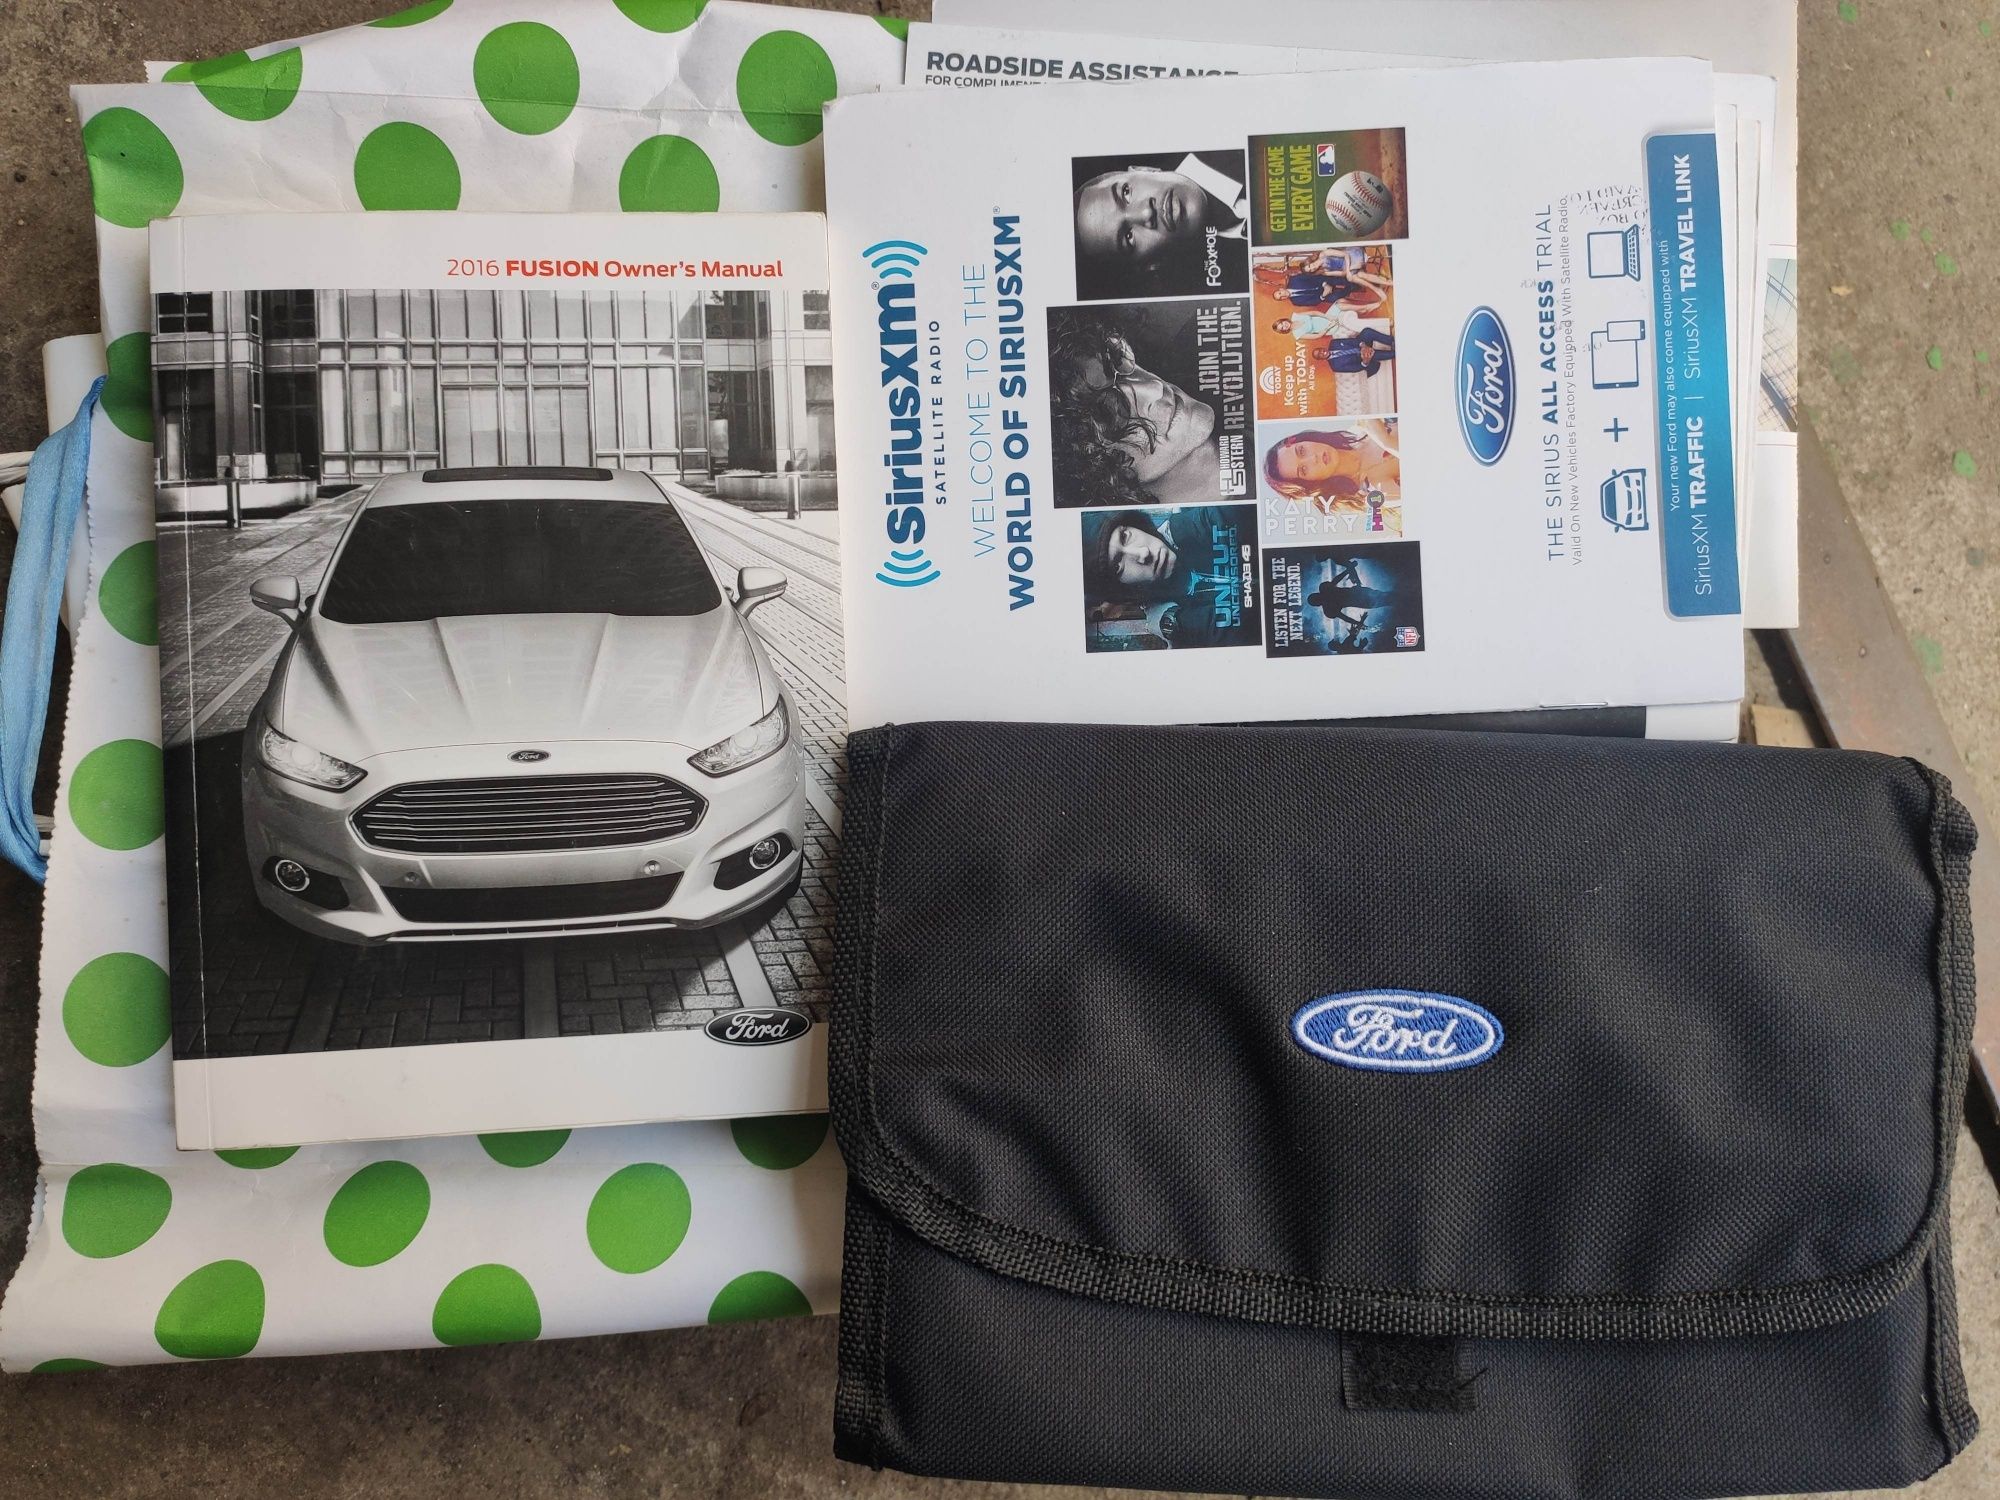 Оригинальный мануал в сумке Ford Fusion 2015 [модельный 2016)